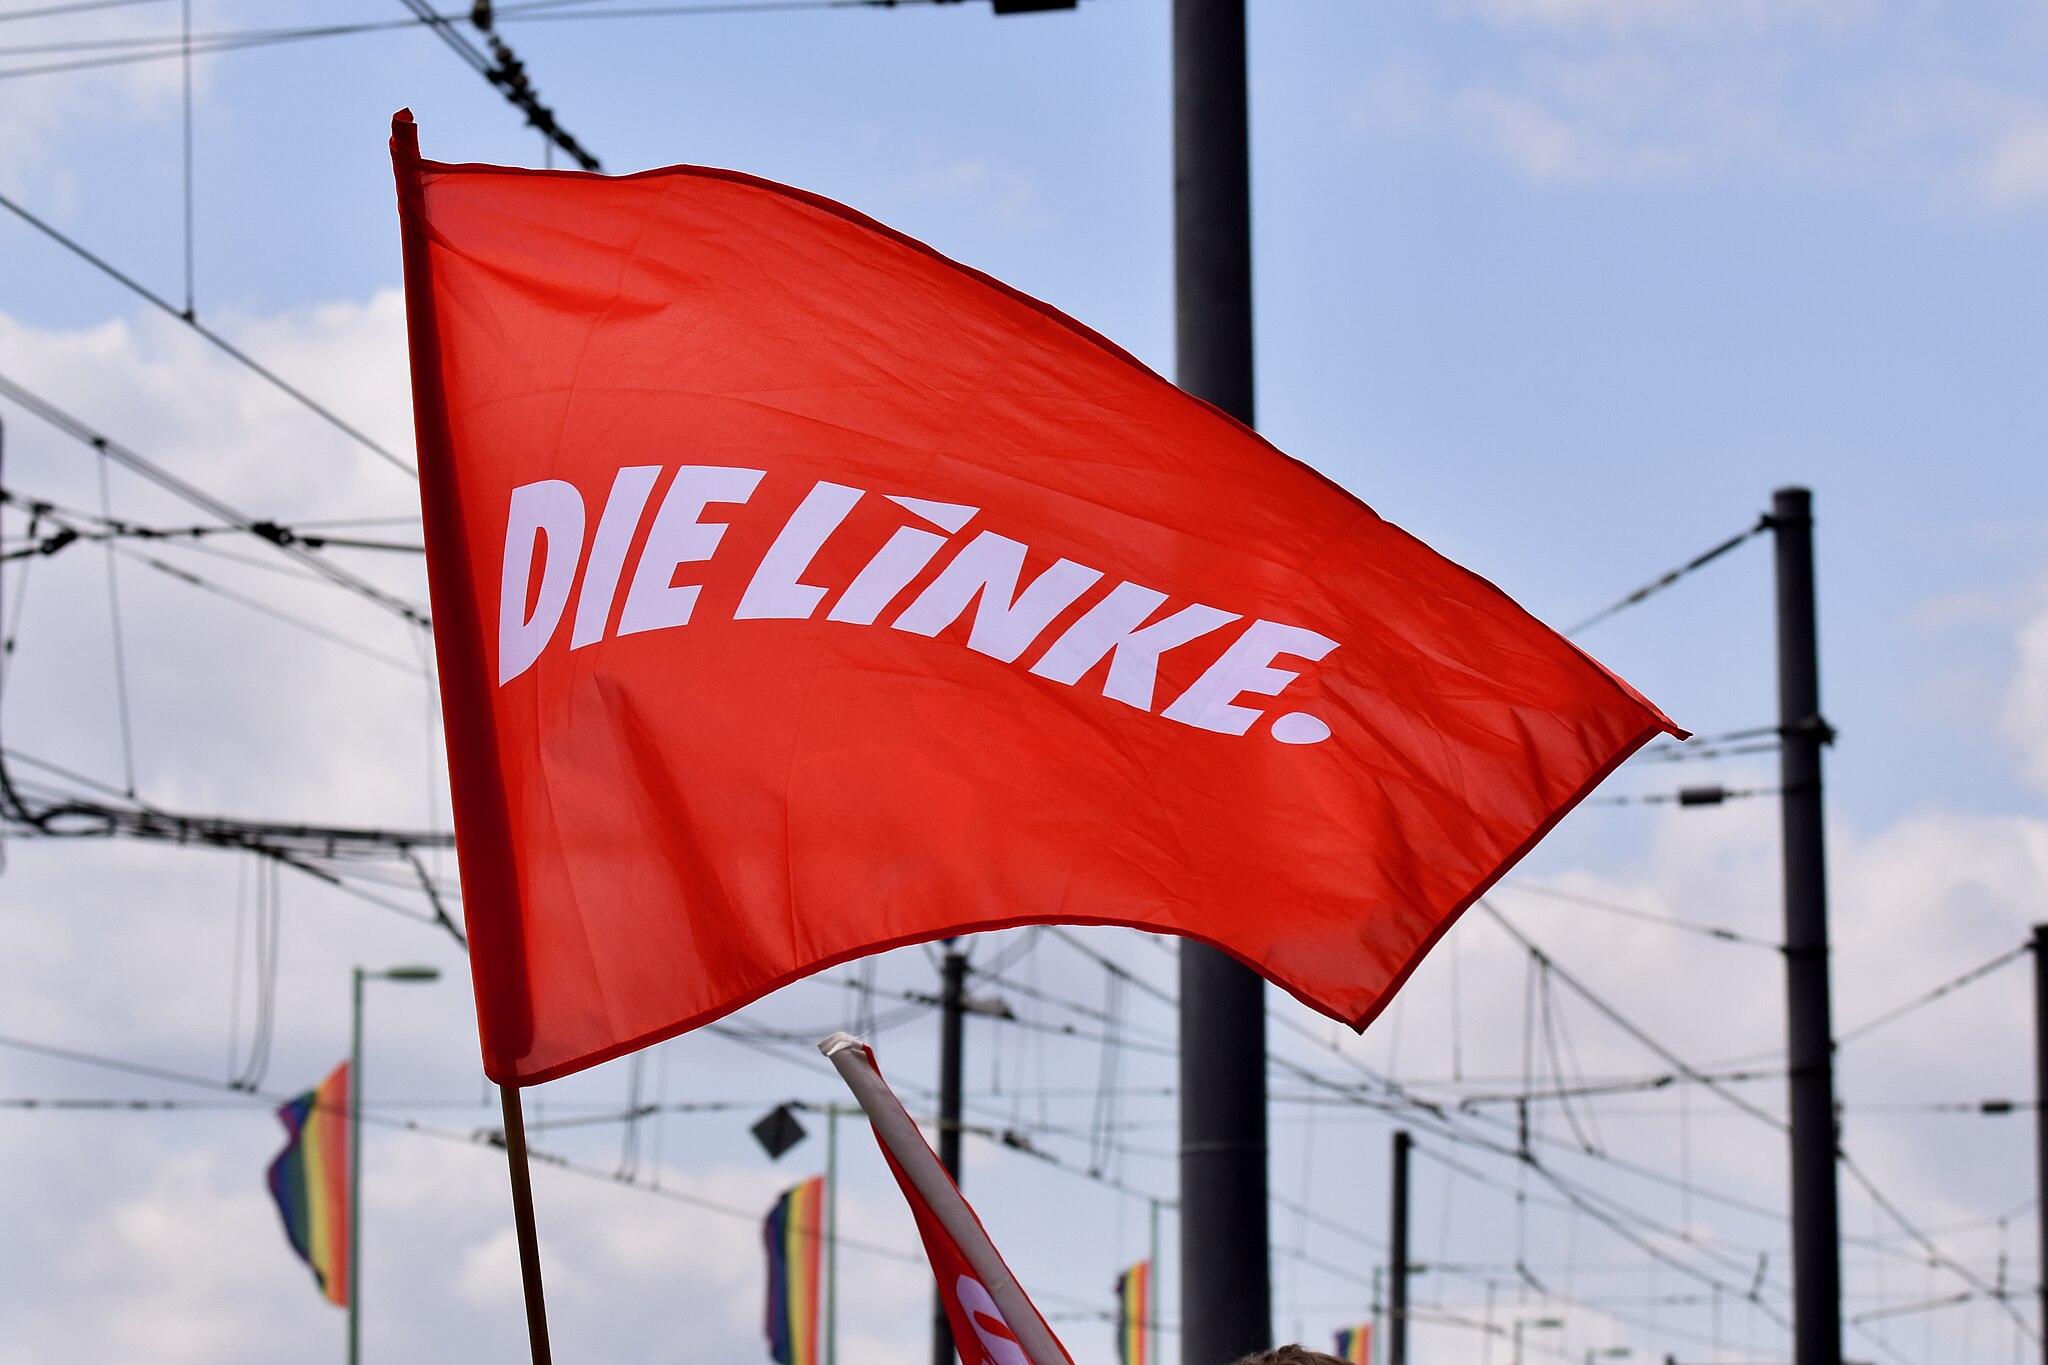 Bild: DIE LINKE Nordrhein-Westfalen from Düsseldorf, -colognepride 2019 - DIE LINKE (48229978826), CC BY-SA 2.0, via Wikimedia Commons (keine Änderungen vorgenommen)